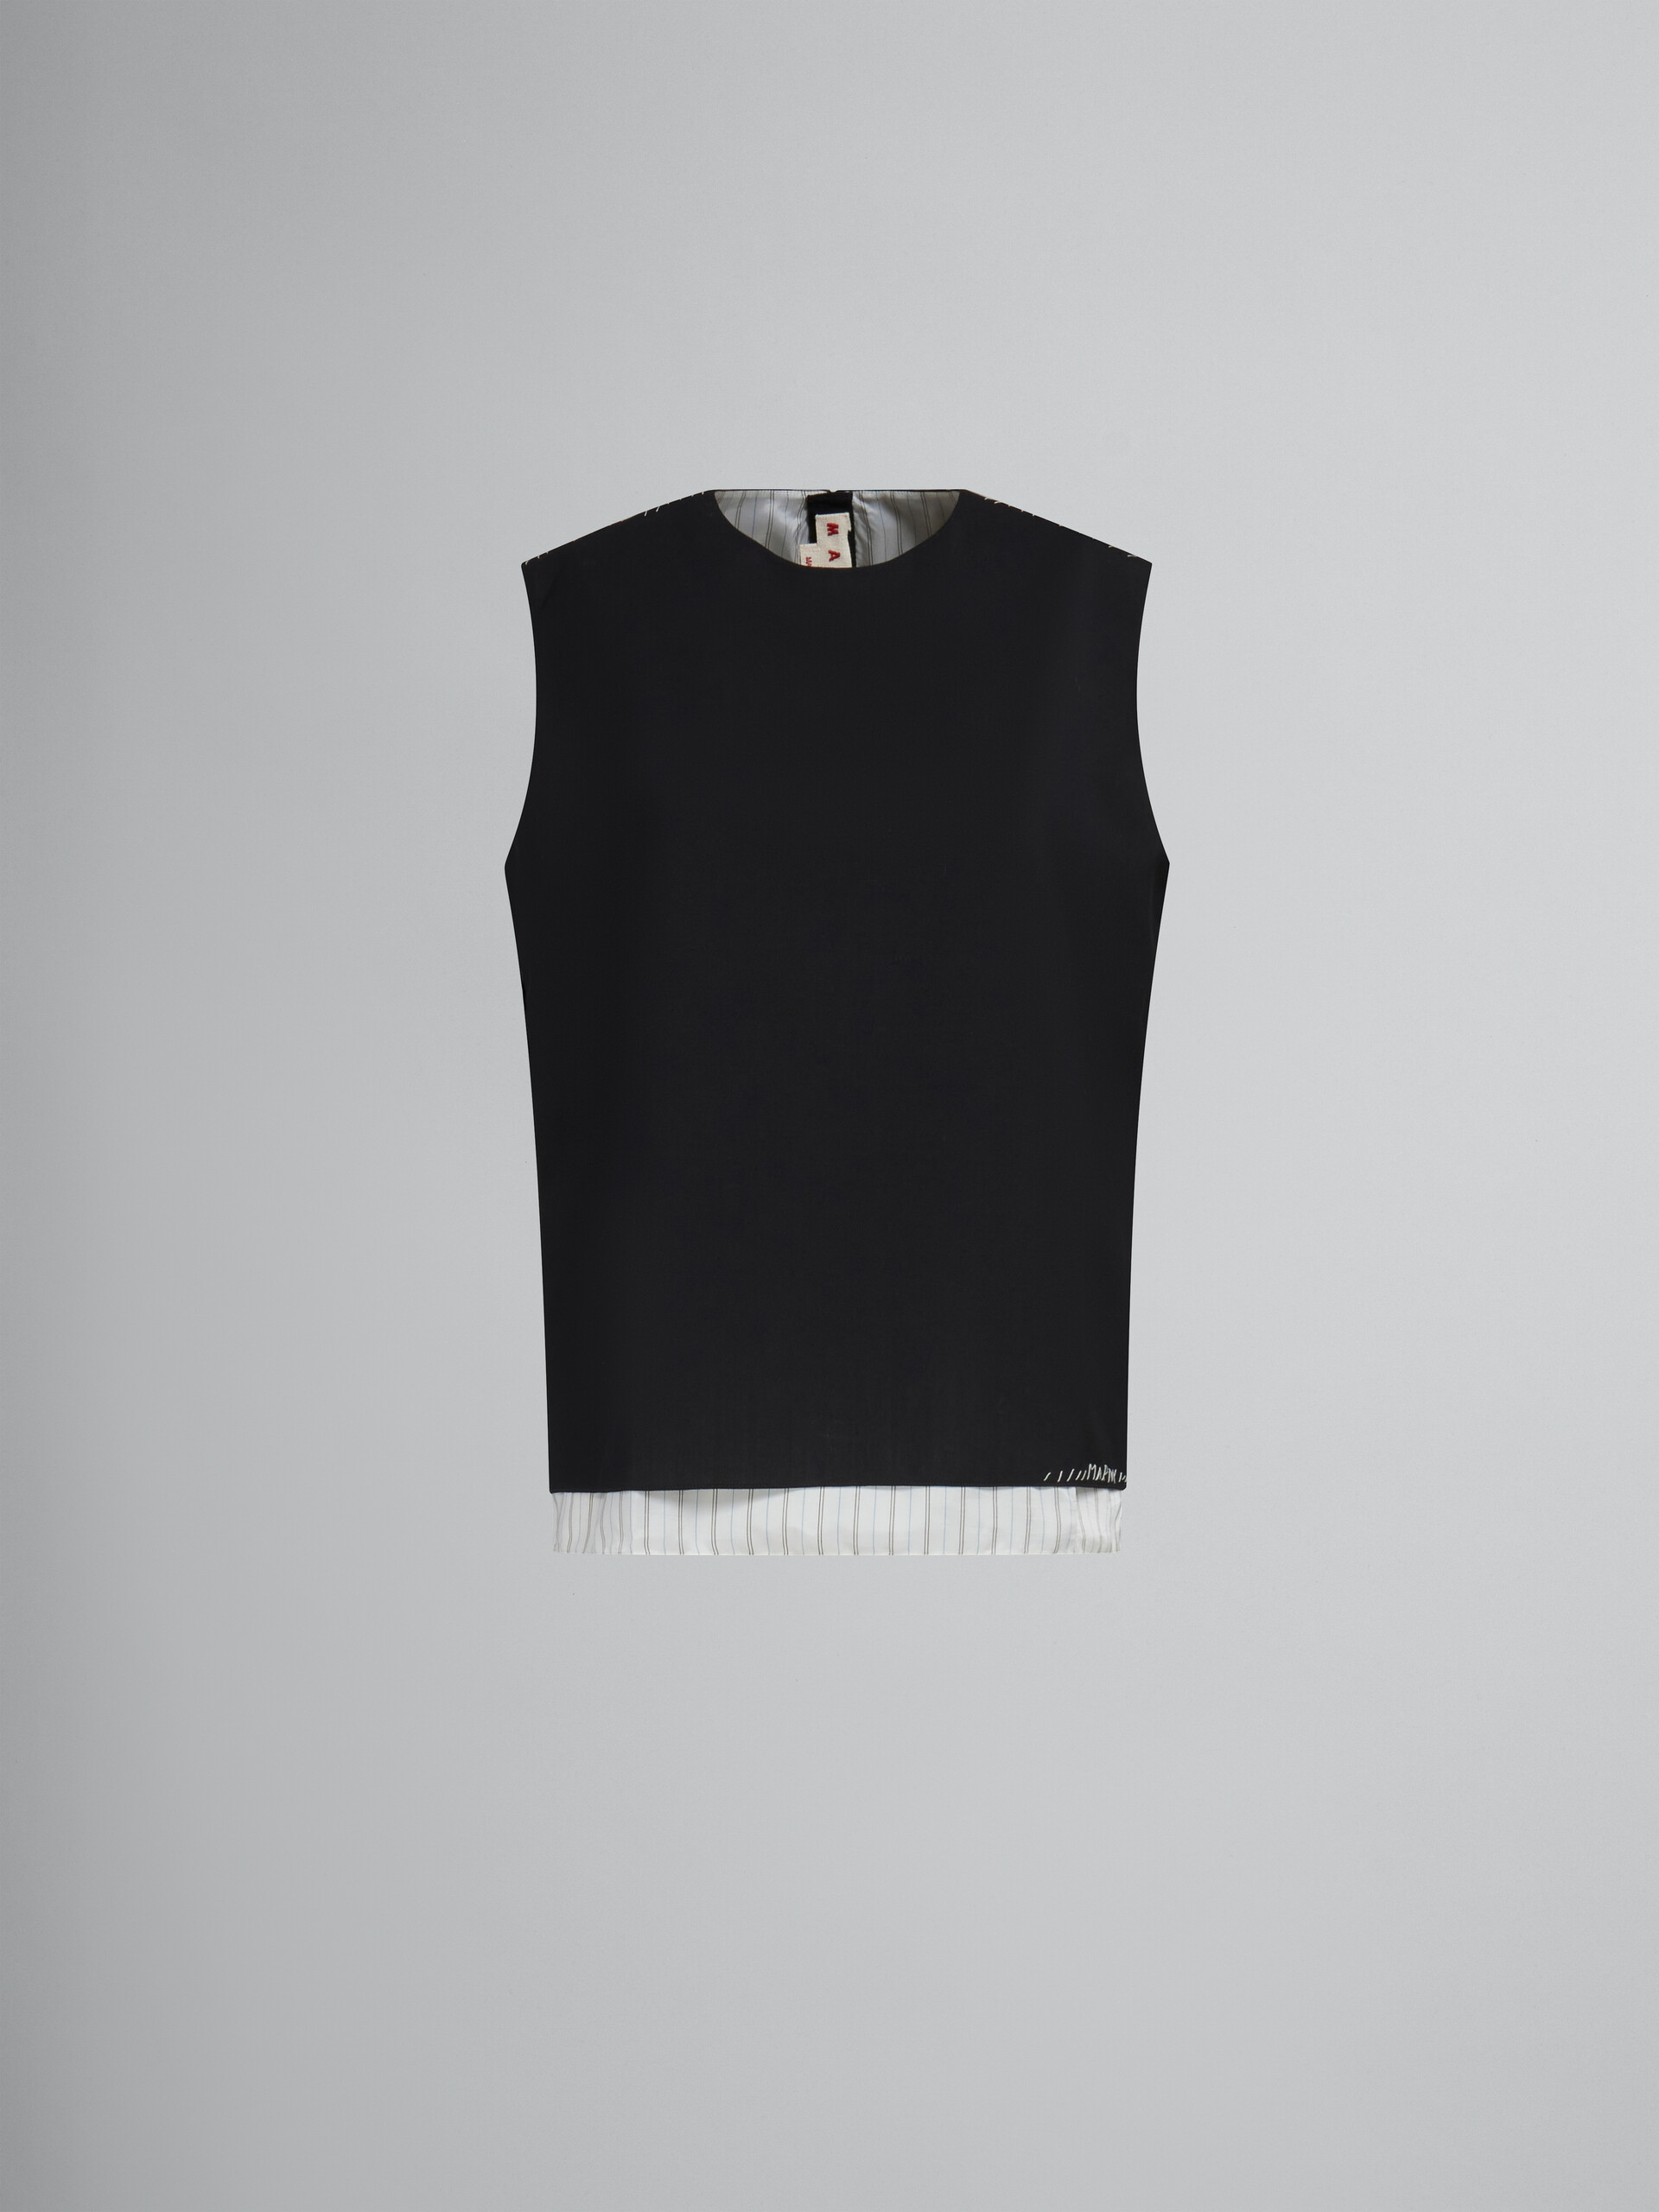 Schwarzes ärmelloses Top aus Tropenwolle mit Marni-Flicken - Hemden - Image 1